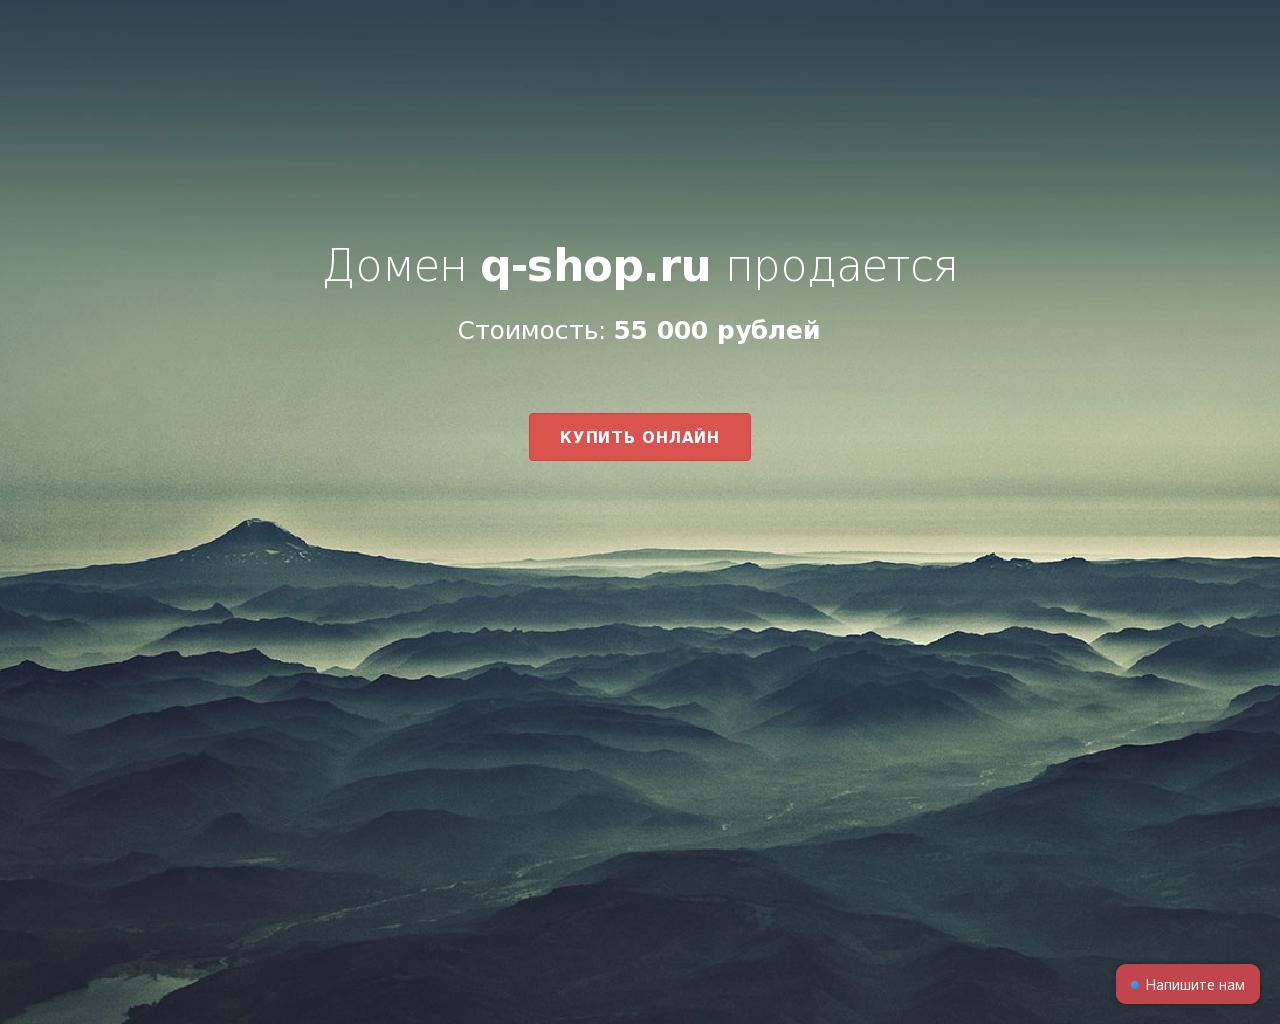 Изображение сайта q-shop.ru в разрешении 1280x1024